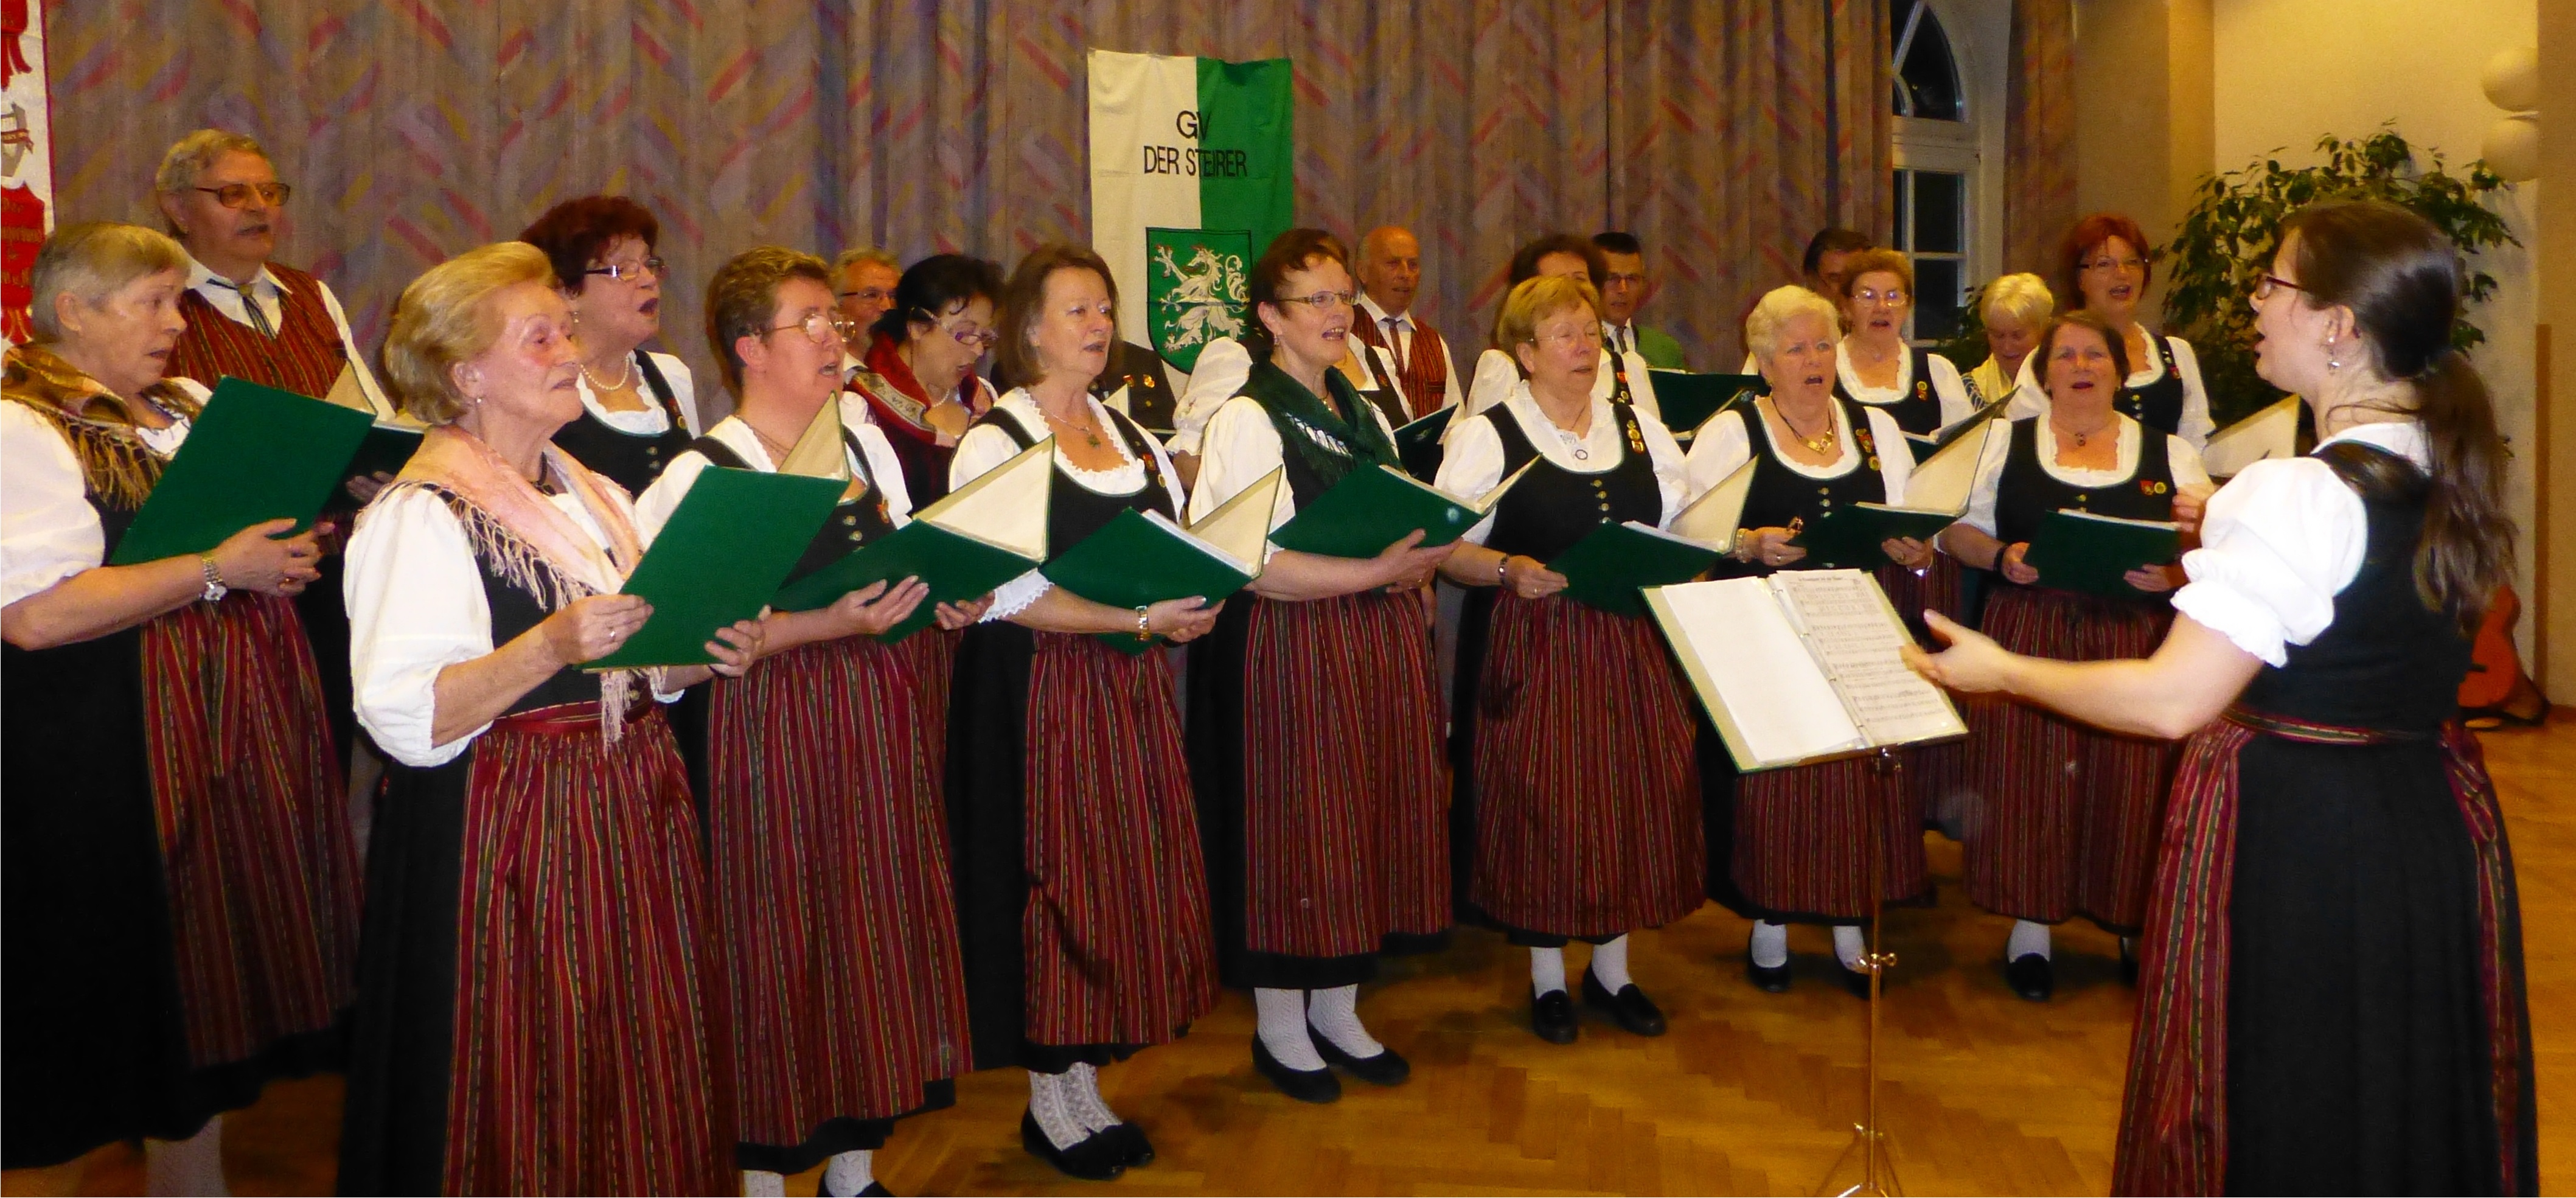 ChorForum Wien: Advent im Haus der Musik